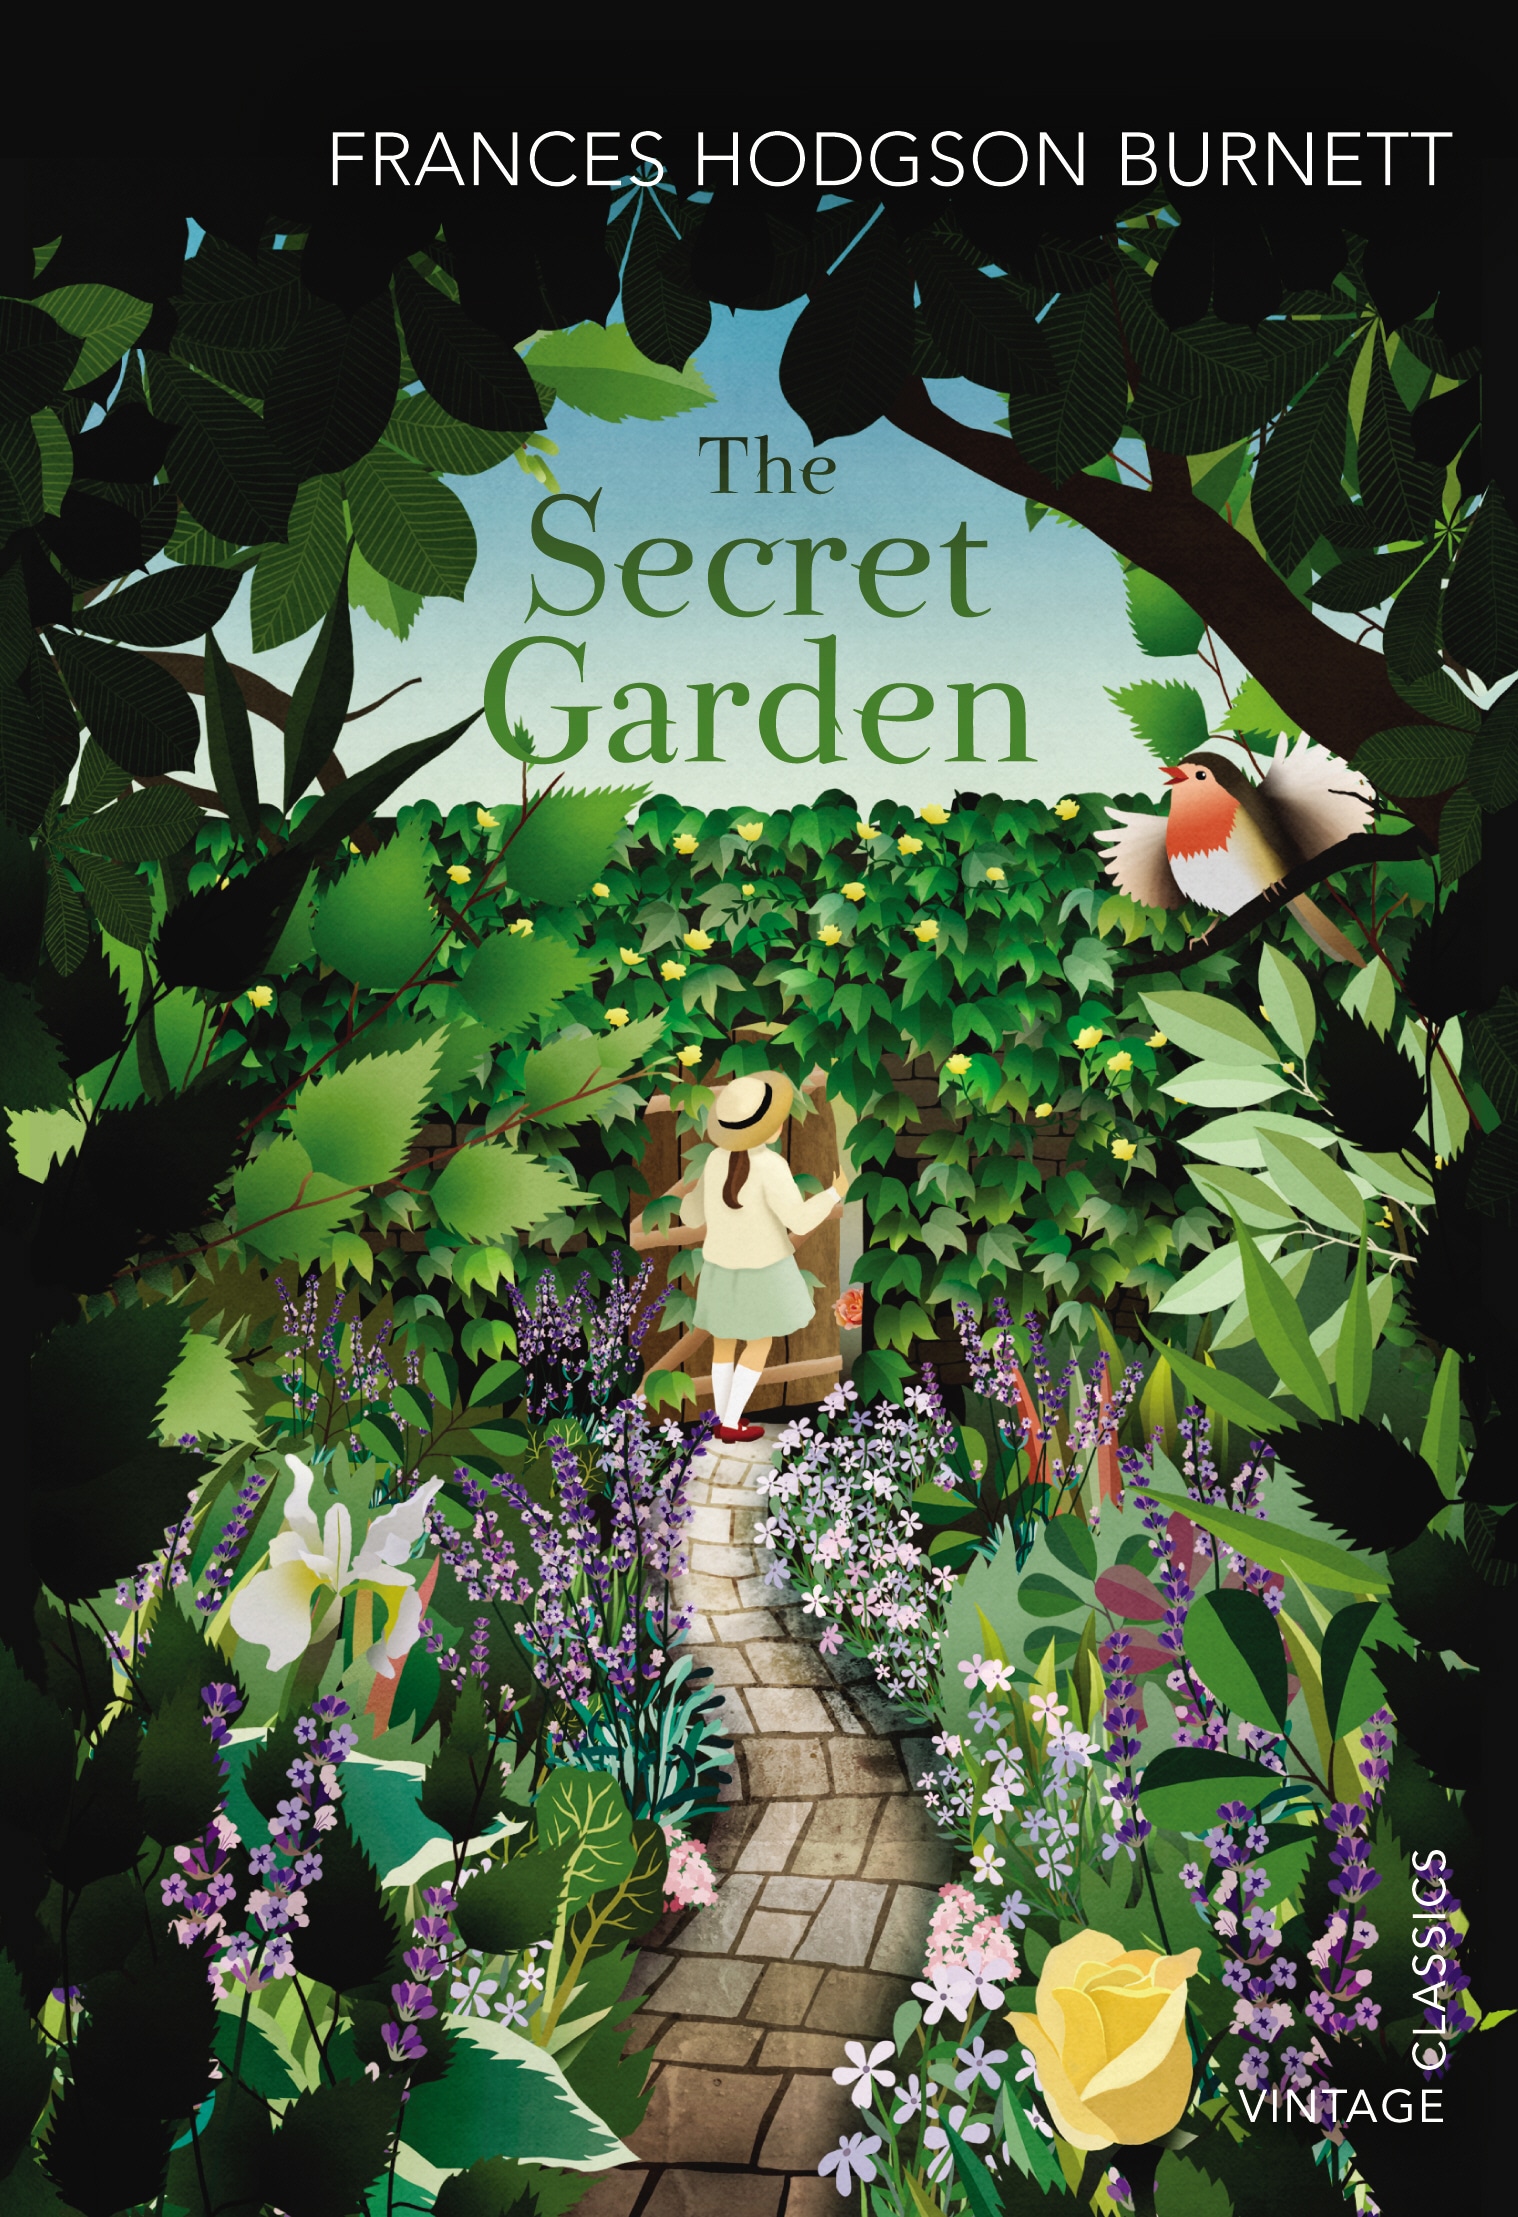 Book “The Secret Garden” by Frances Hodgson Burnett — August 2, 2012